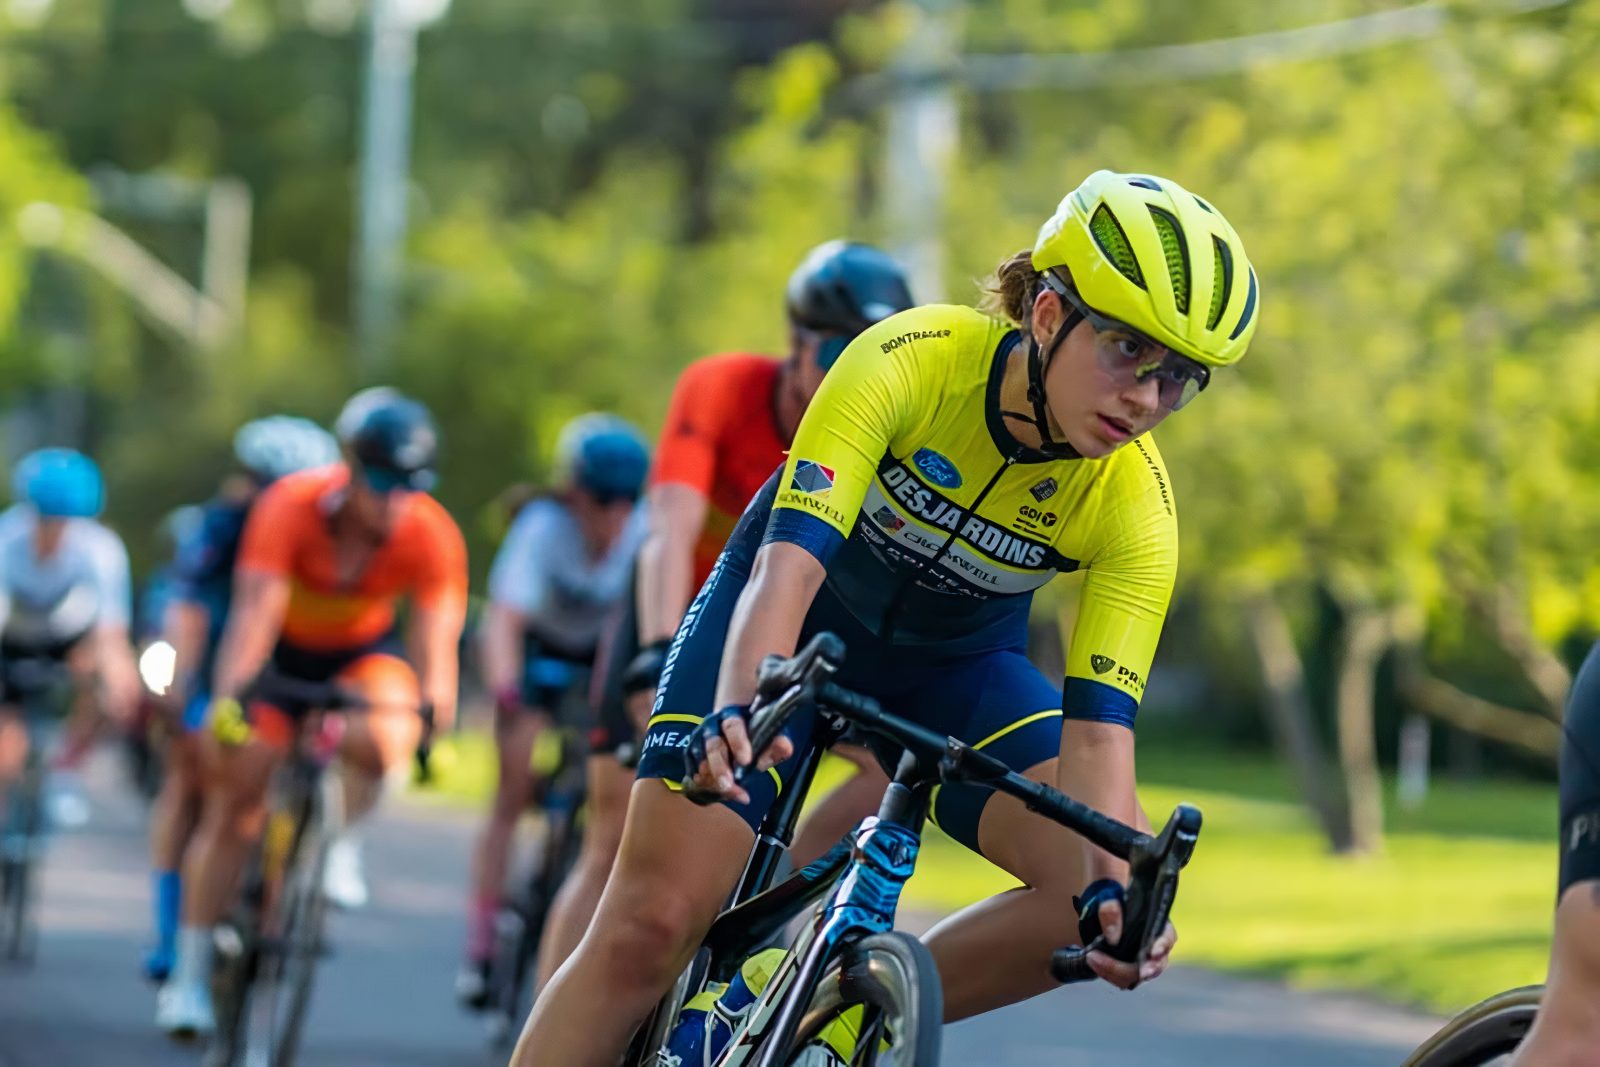 Iris et Eva Gabelier: Des soeurs unies par leur passion pour le cyclisme